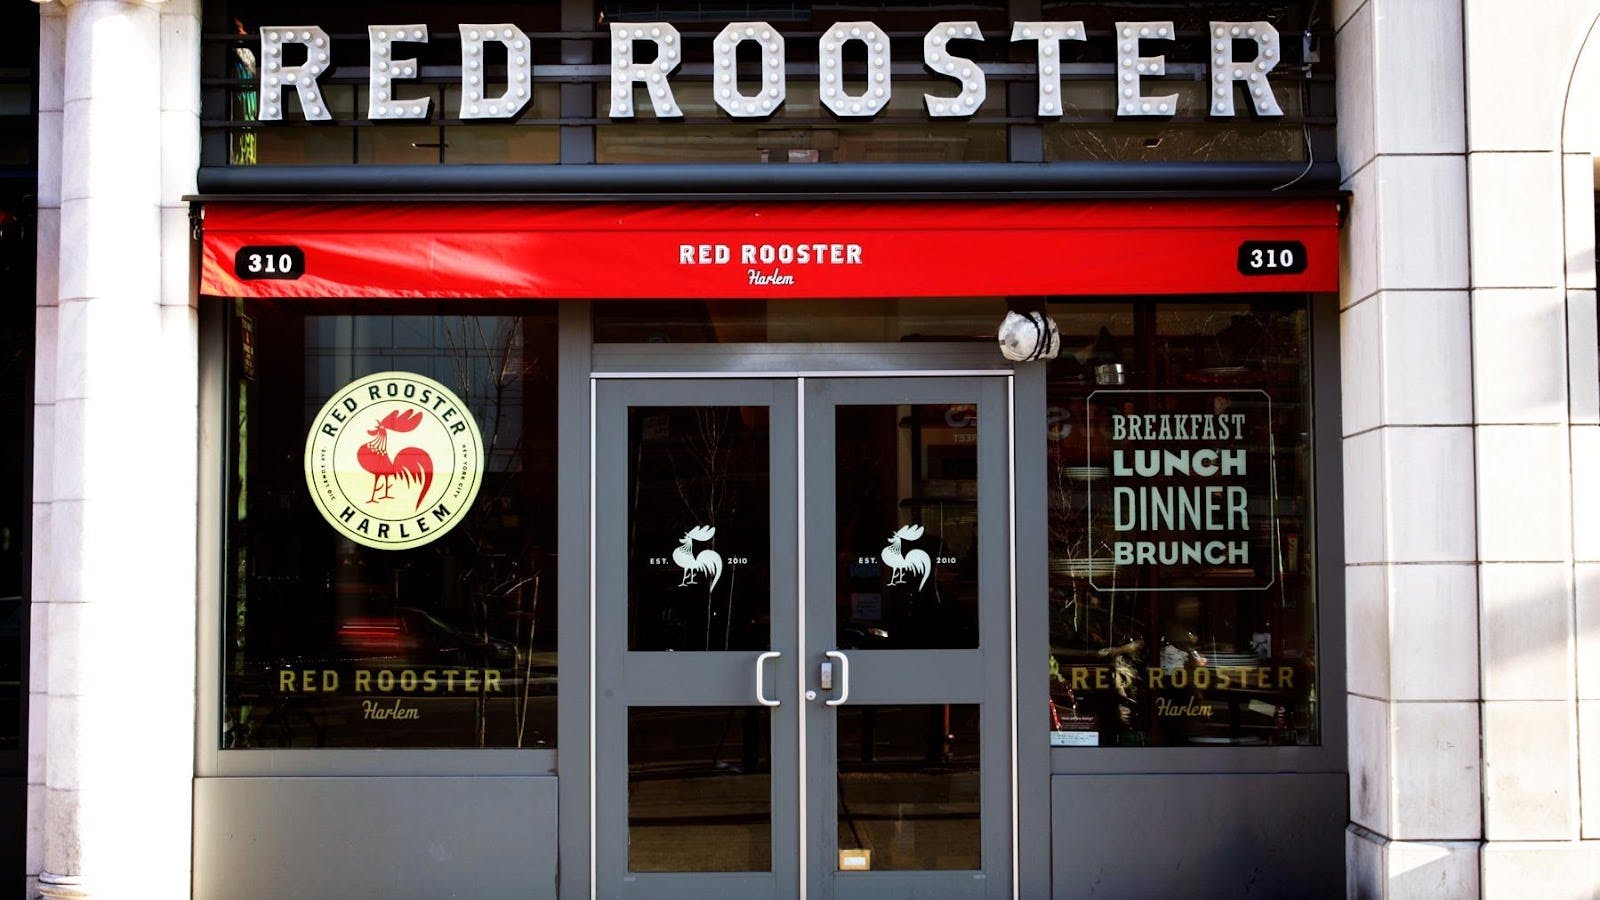 Image - Red Rooster Harlem